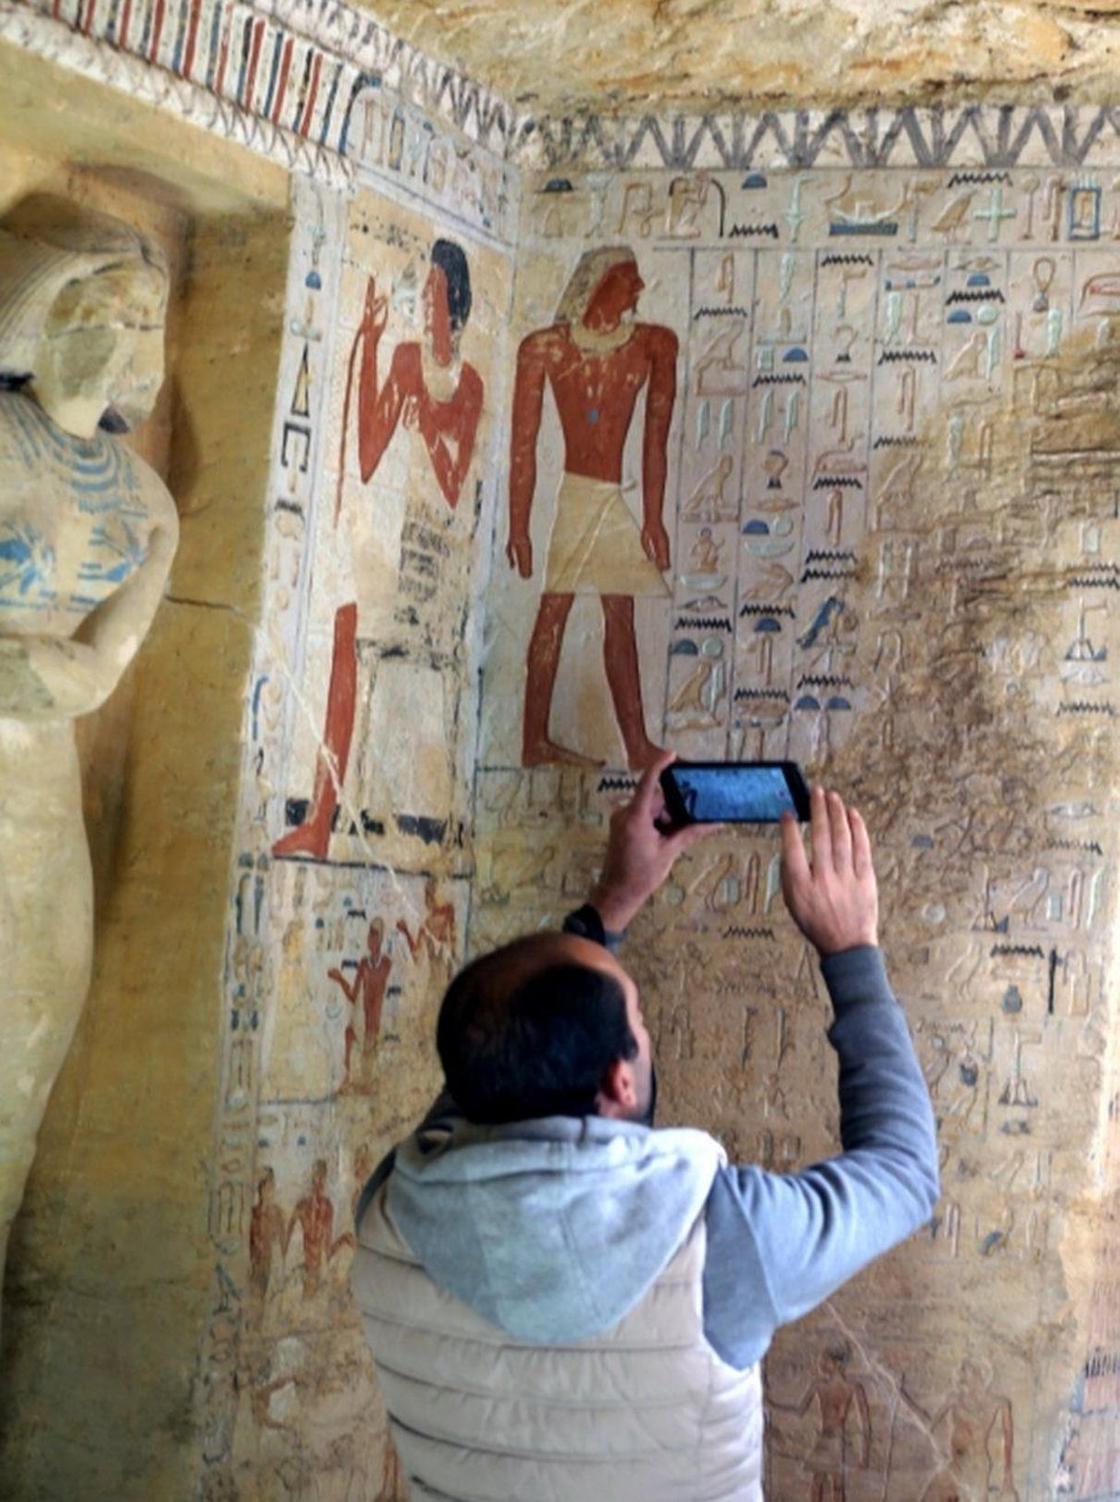 В Египте обнаружили гробницу богатого жреца